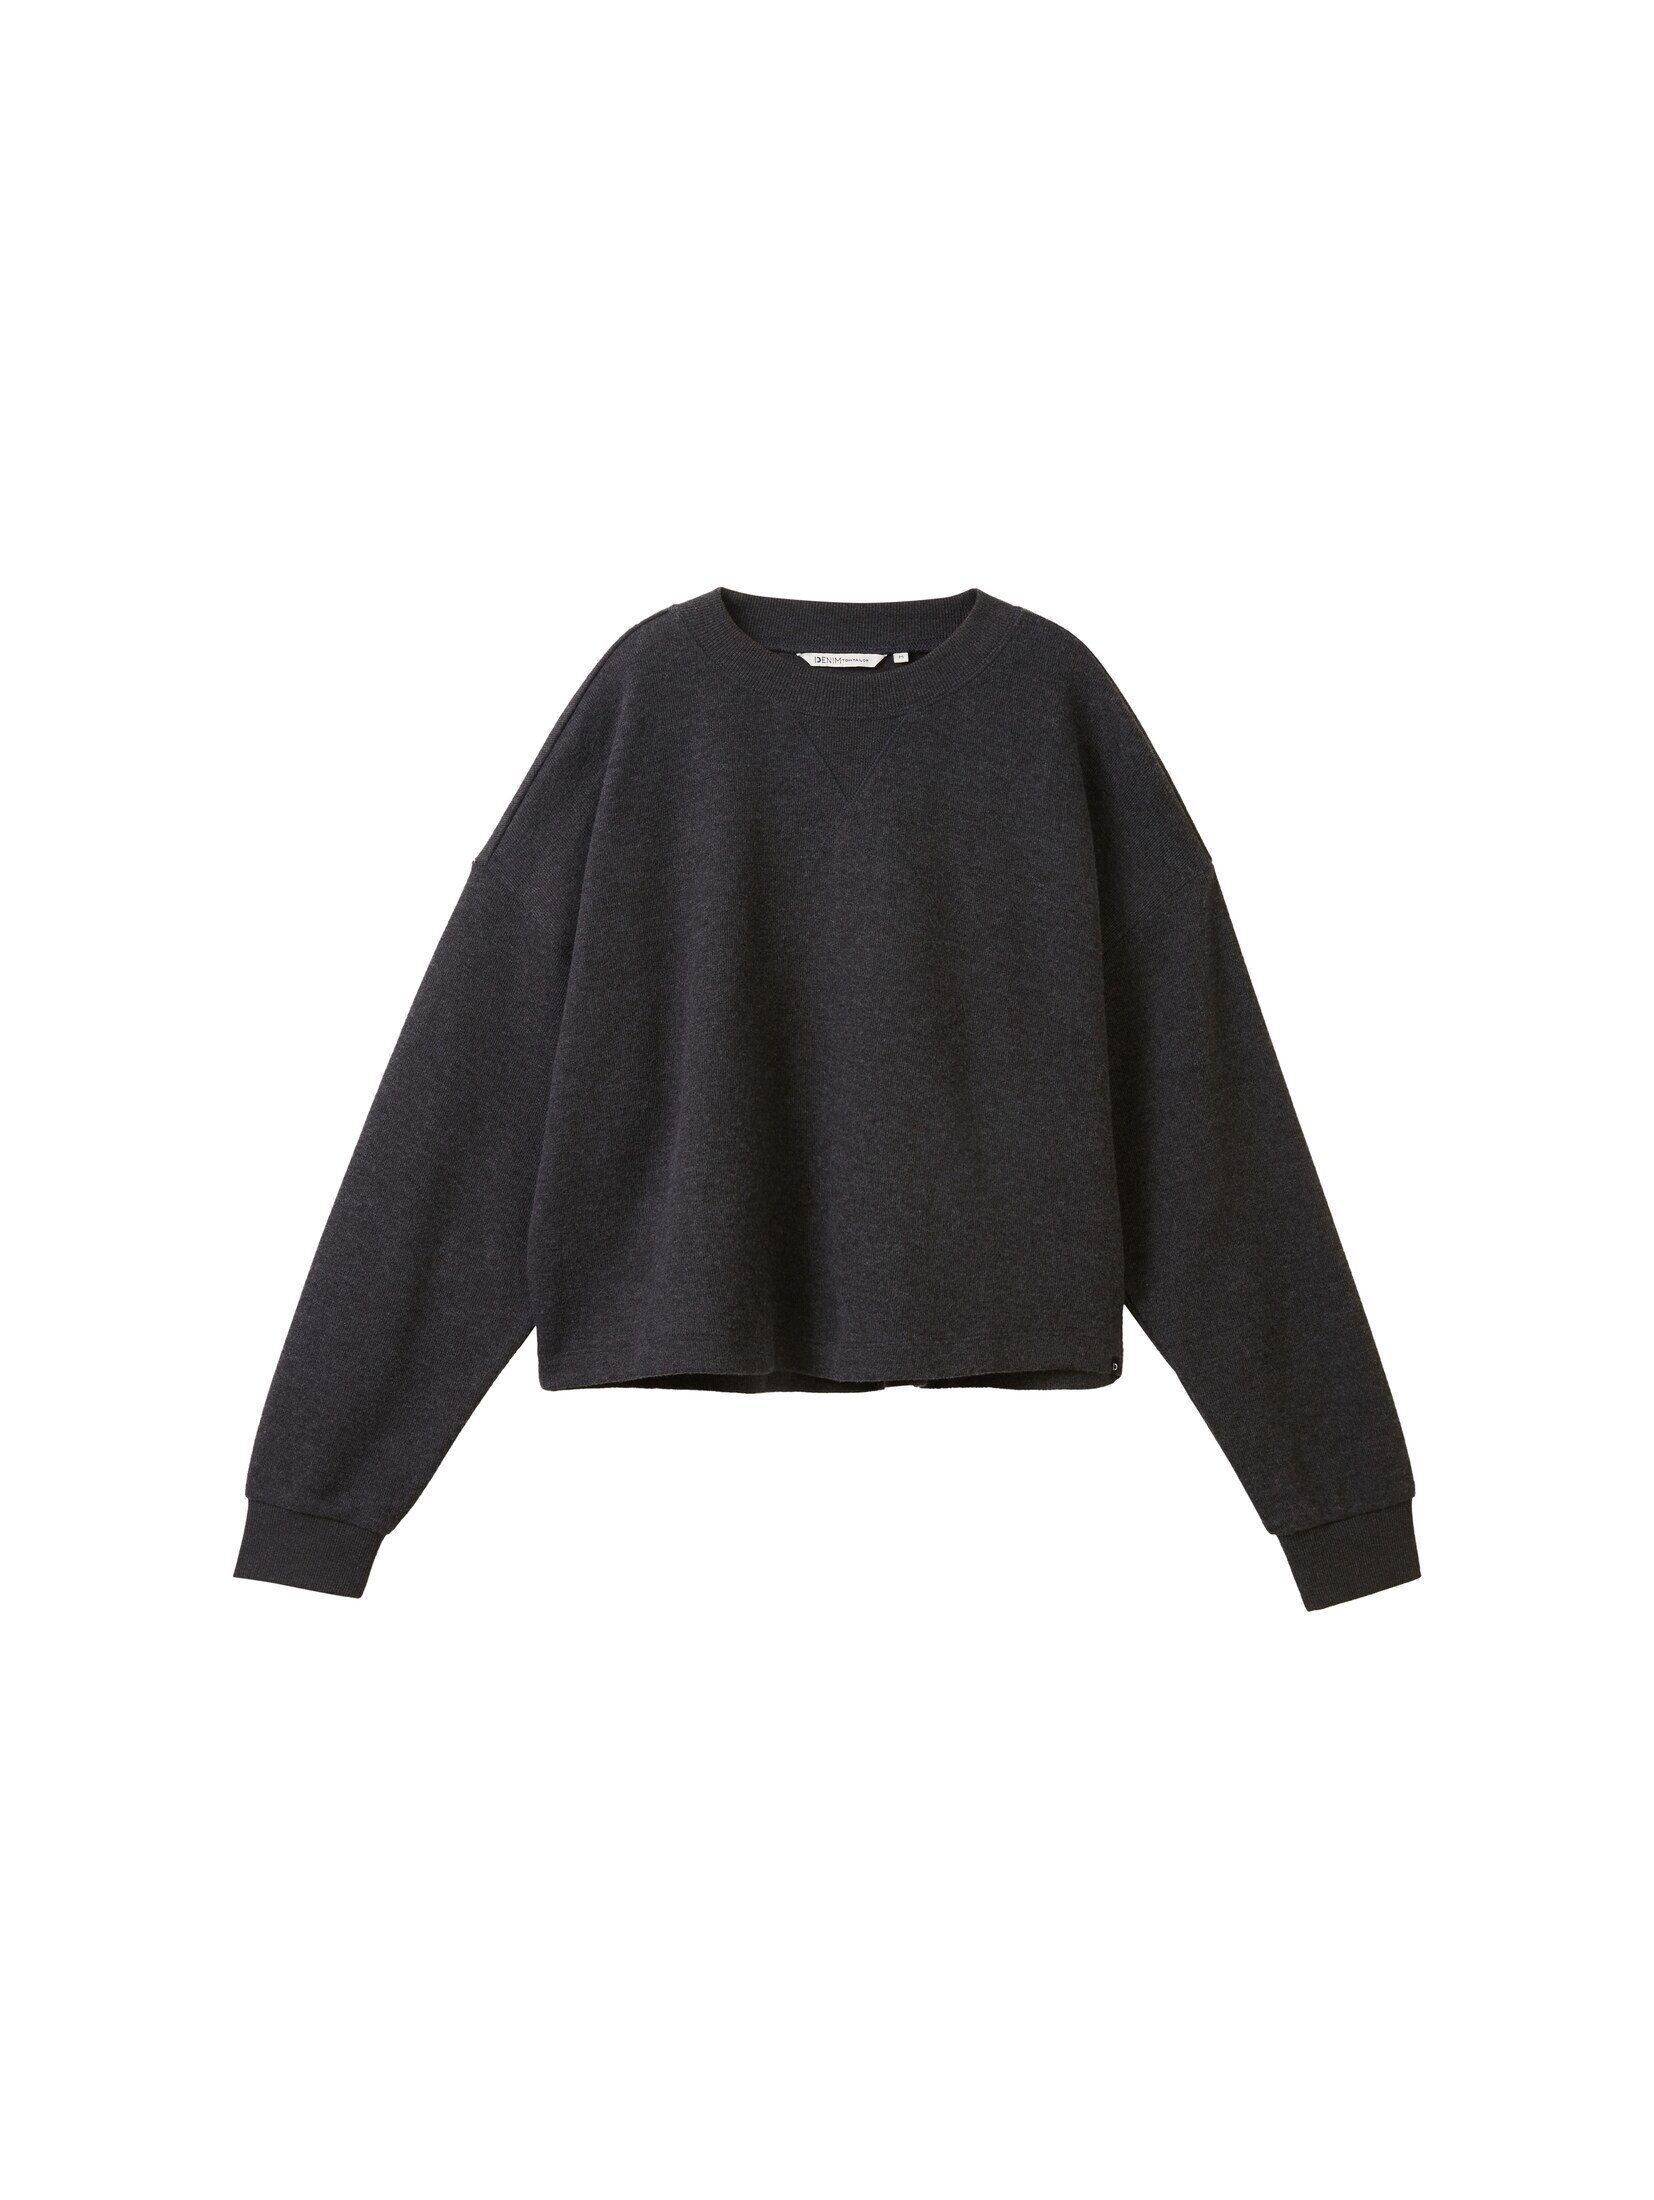 TOM TAILOR Cropped Sweatshirt Shale Melange Rundhalsausschnitt Denim Grey Sweatshirt mit